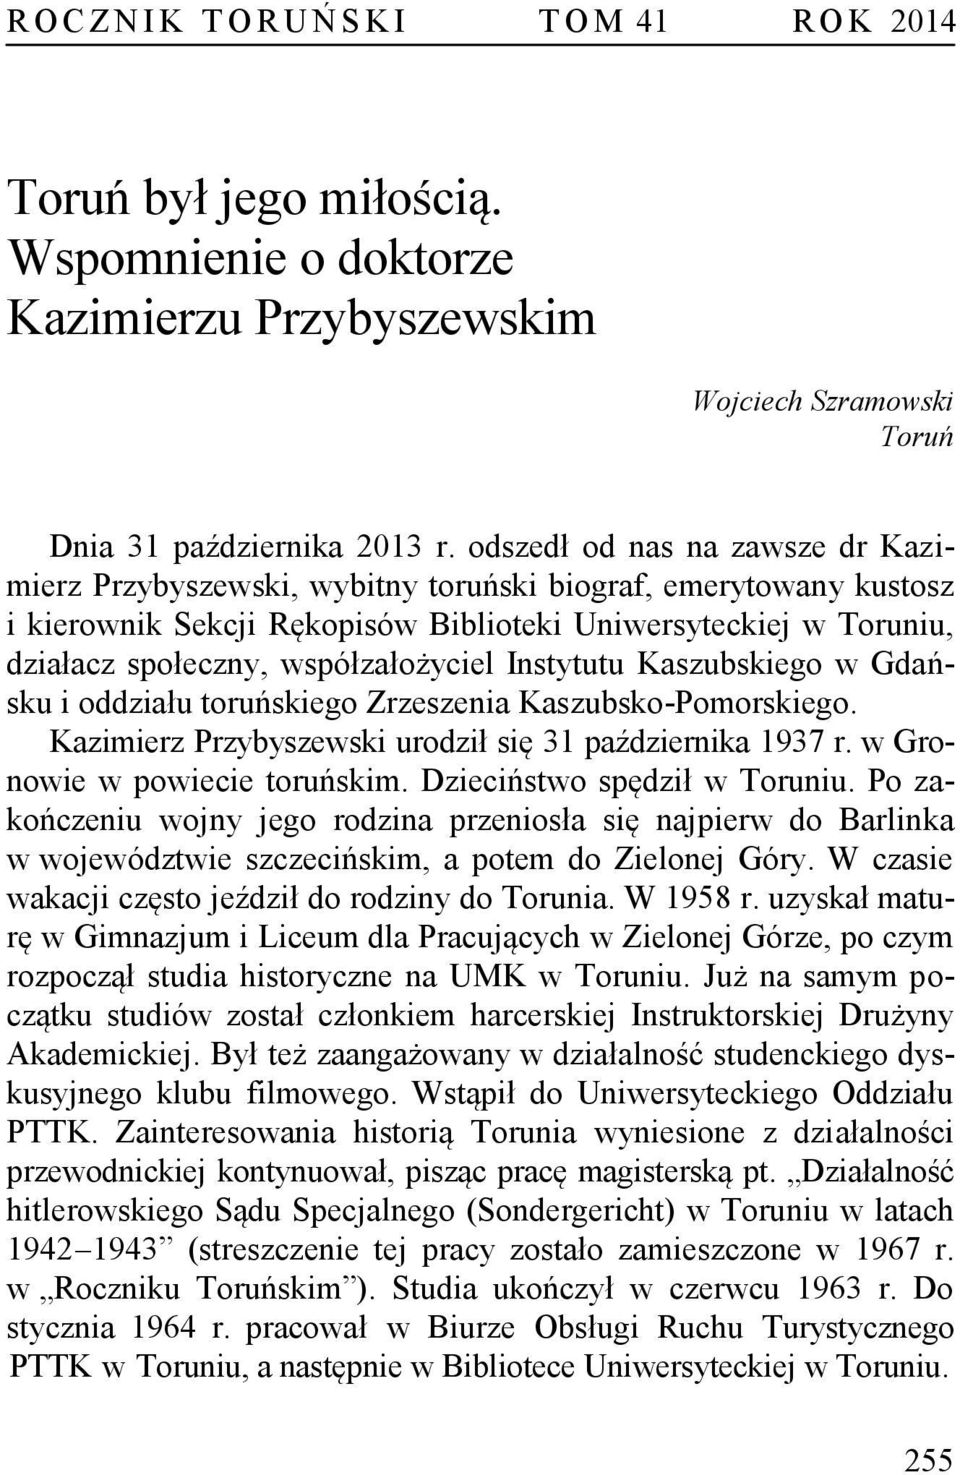 współzałożyciel Instytutu Kaszubskiego w Gdańsku i oddziału toruńskiego Zrzeszenia Kaszubsko-Pomorskiego. Kazimierz Przybyszewski urodził się 31 października 1937 r. w Gronowie w powiecie toruńskim.